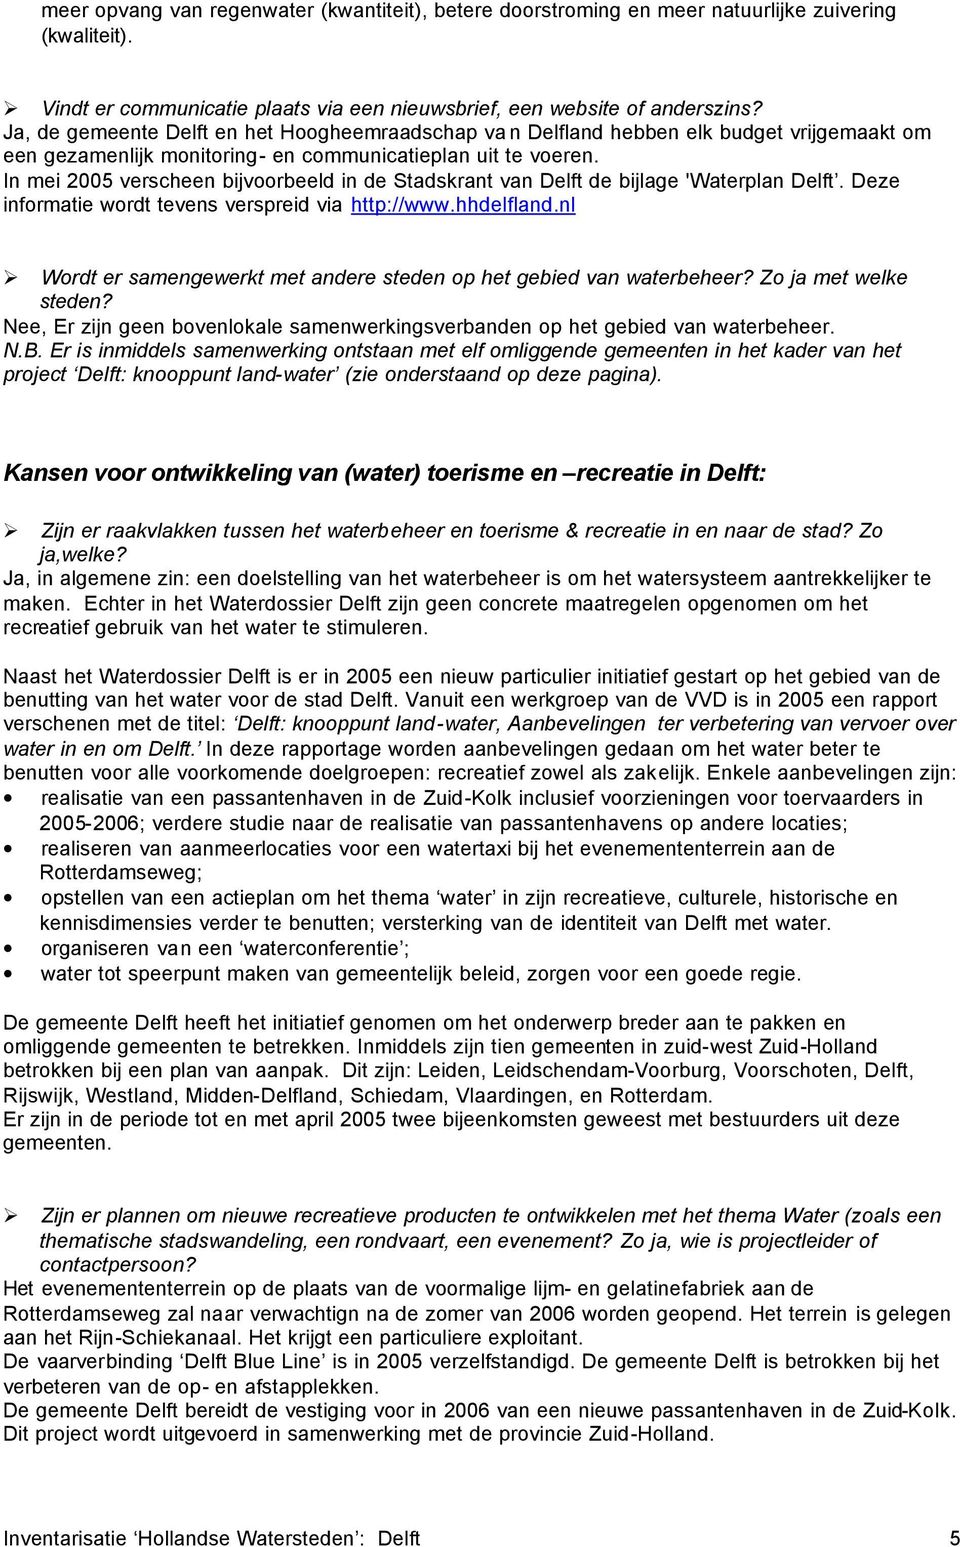 In mei 2005 verscheen bijvoorbeeld in de Stadskrant van Delft de bijlage 'Waterplan Delft. Deze informatie wordt tevens verspreid via http://www.hhdelfland.